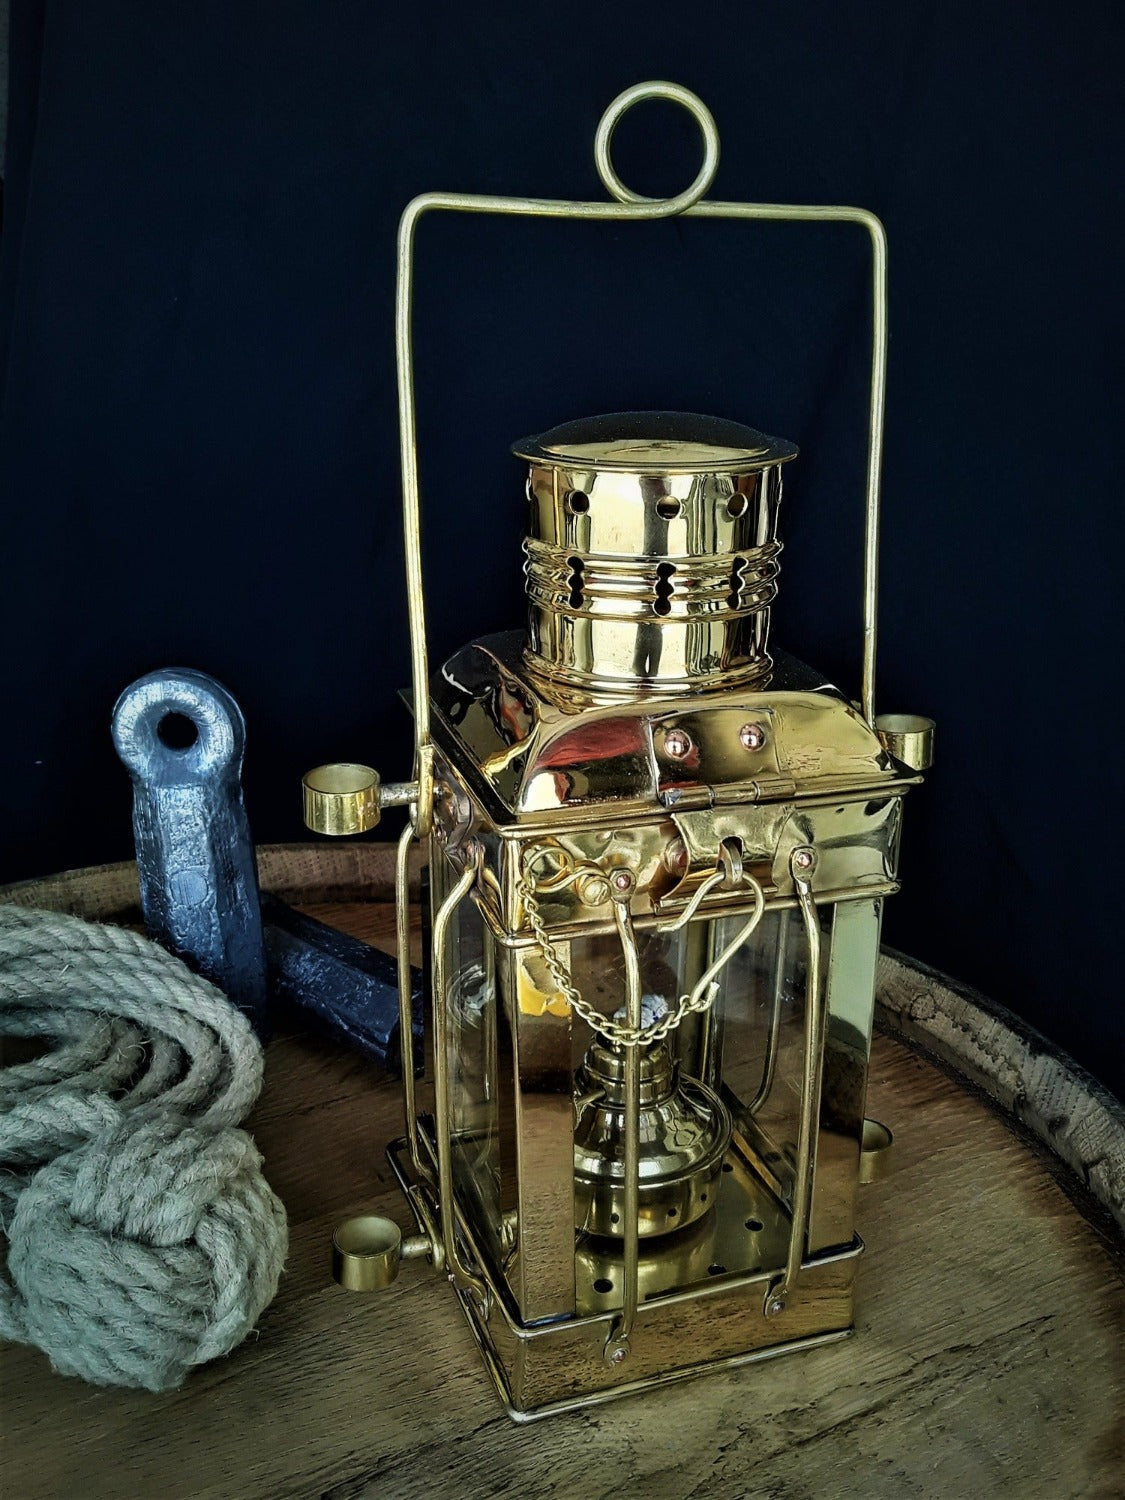 Brass Anchor Lantern - Touch - 19